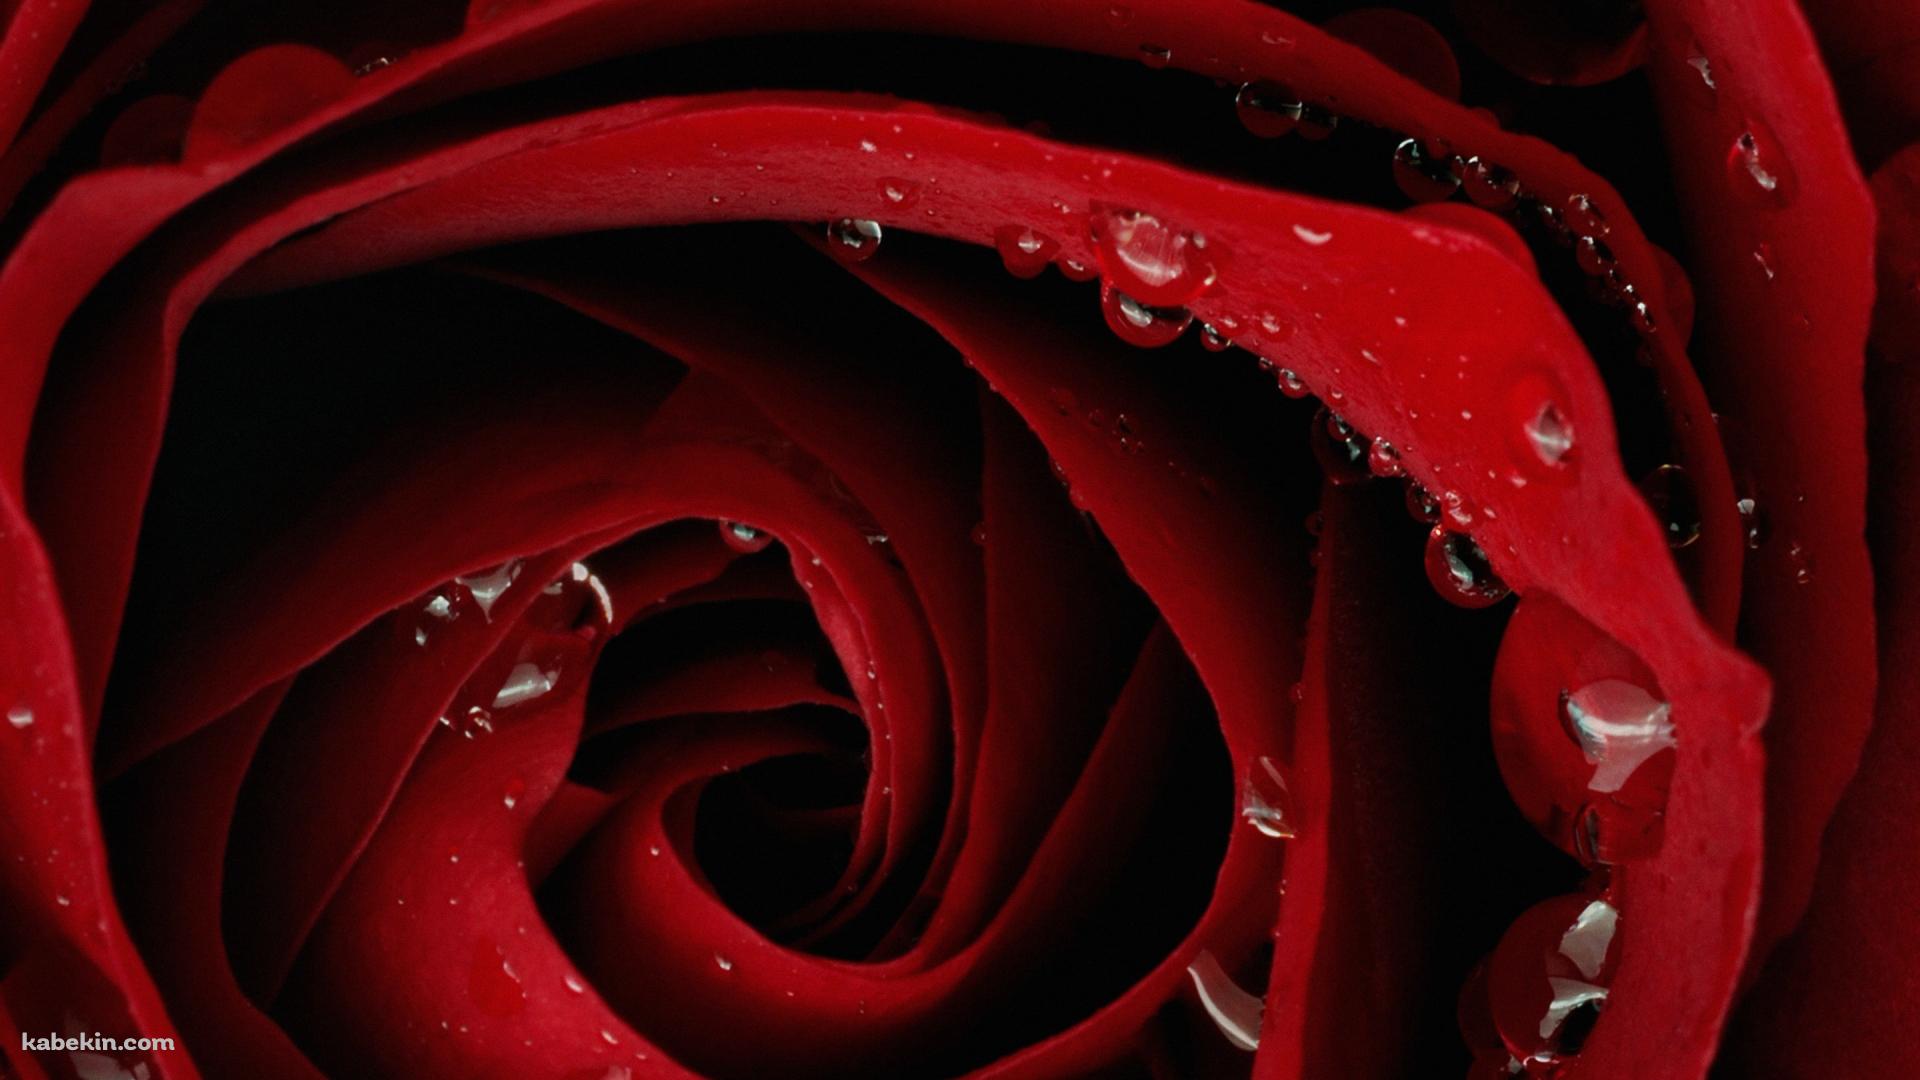 赤い薔薇の壁紙(1920px x 1080px) 高画質 PC・デスクトップ用